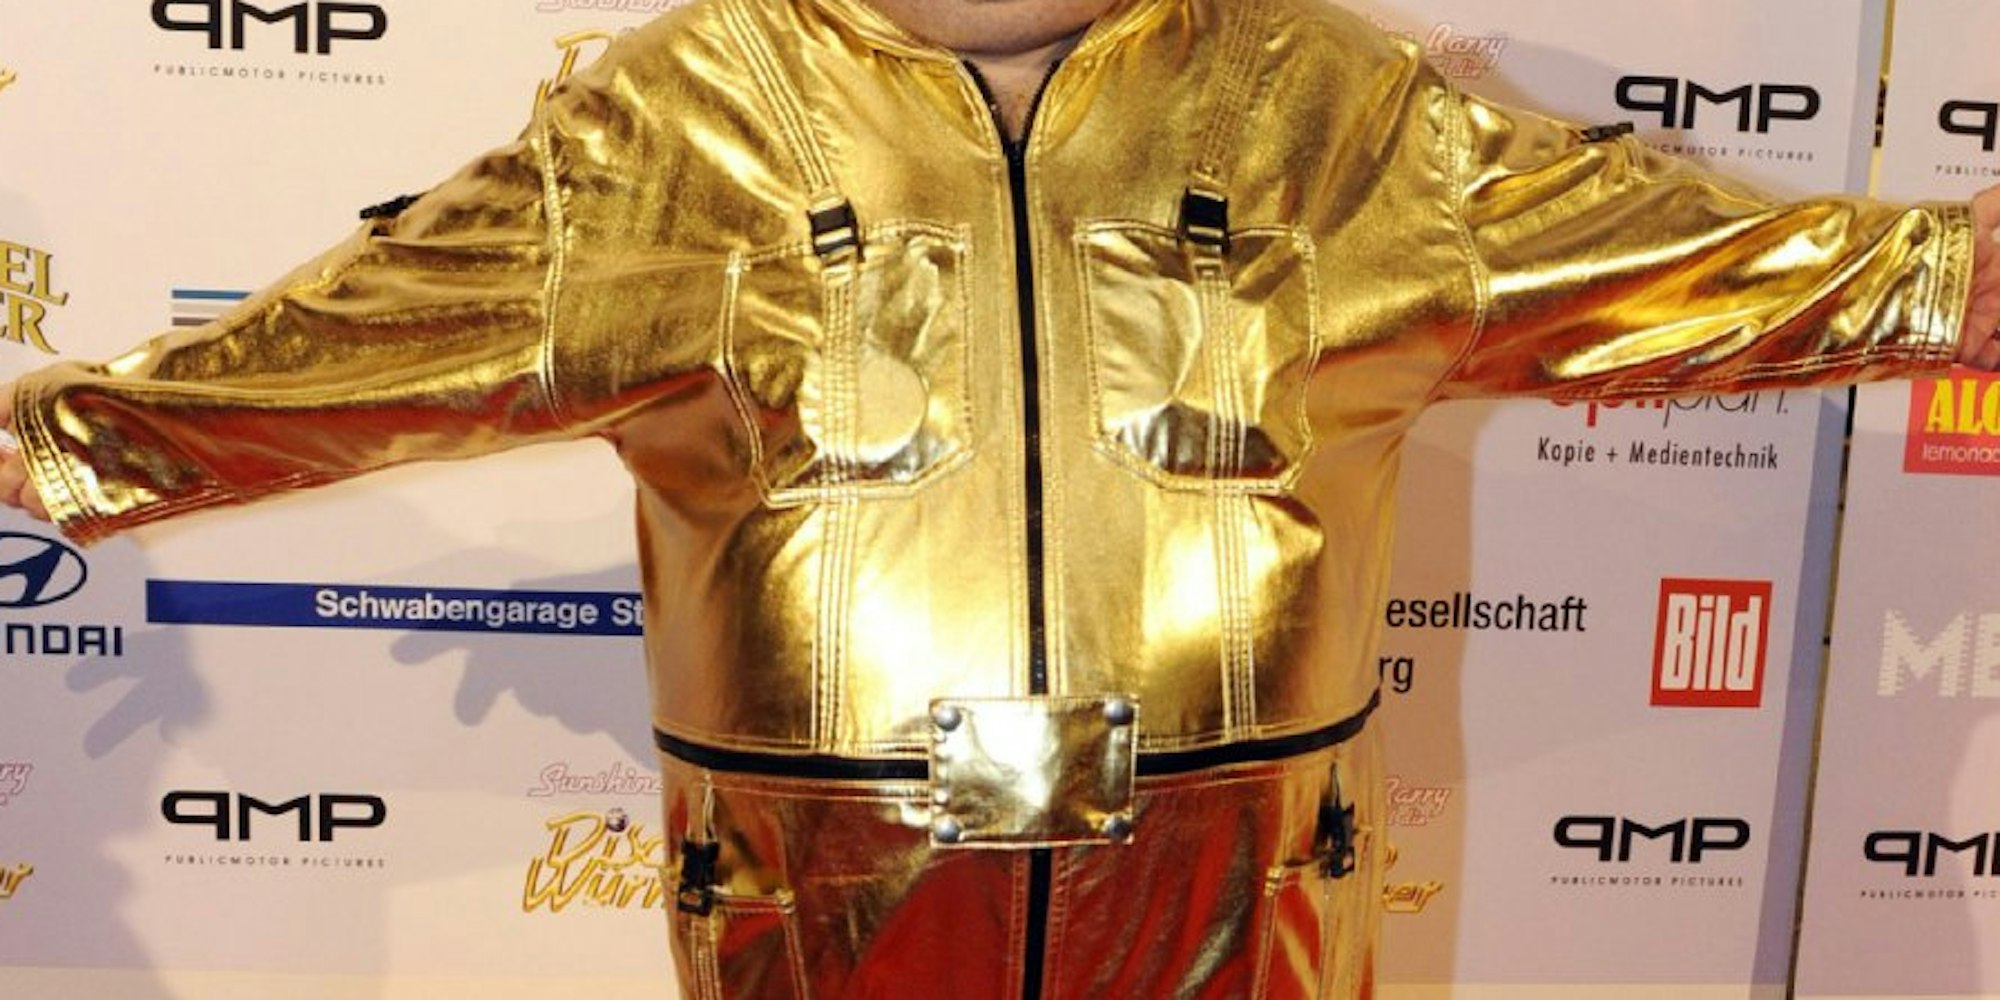 Kugelrund und schrill im goldenen Anzug: Dirk Bach 2009 bei einer Filmpremiere